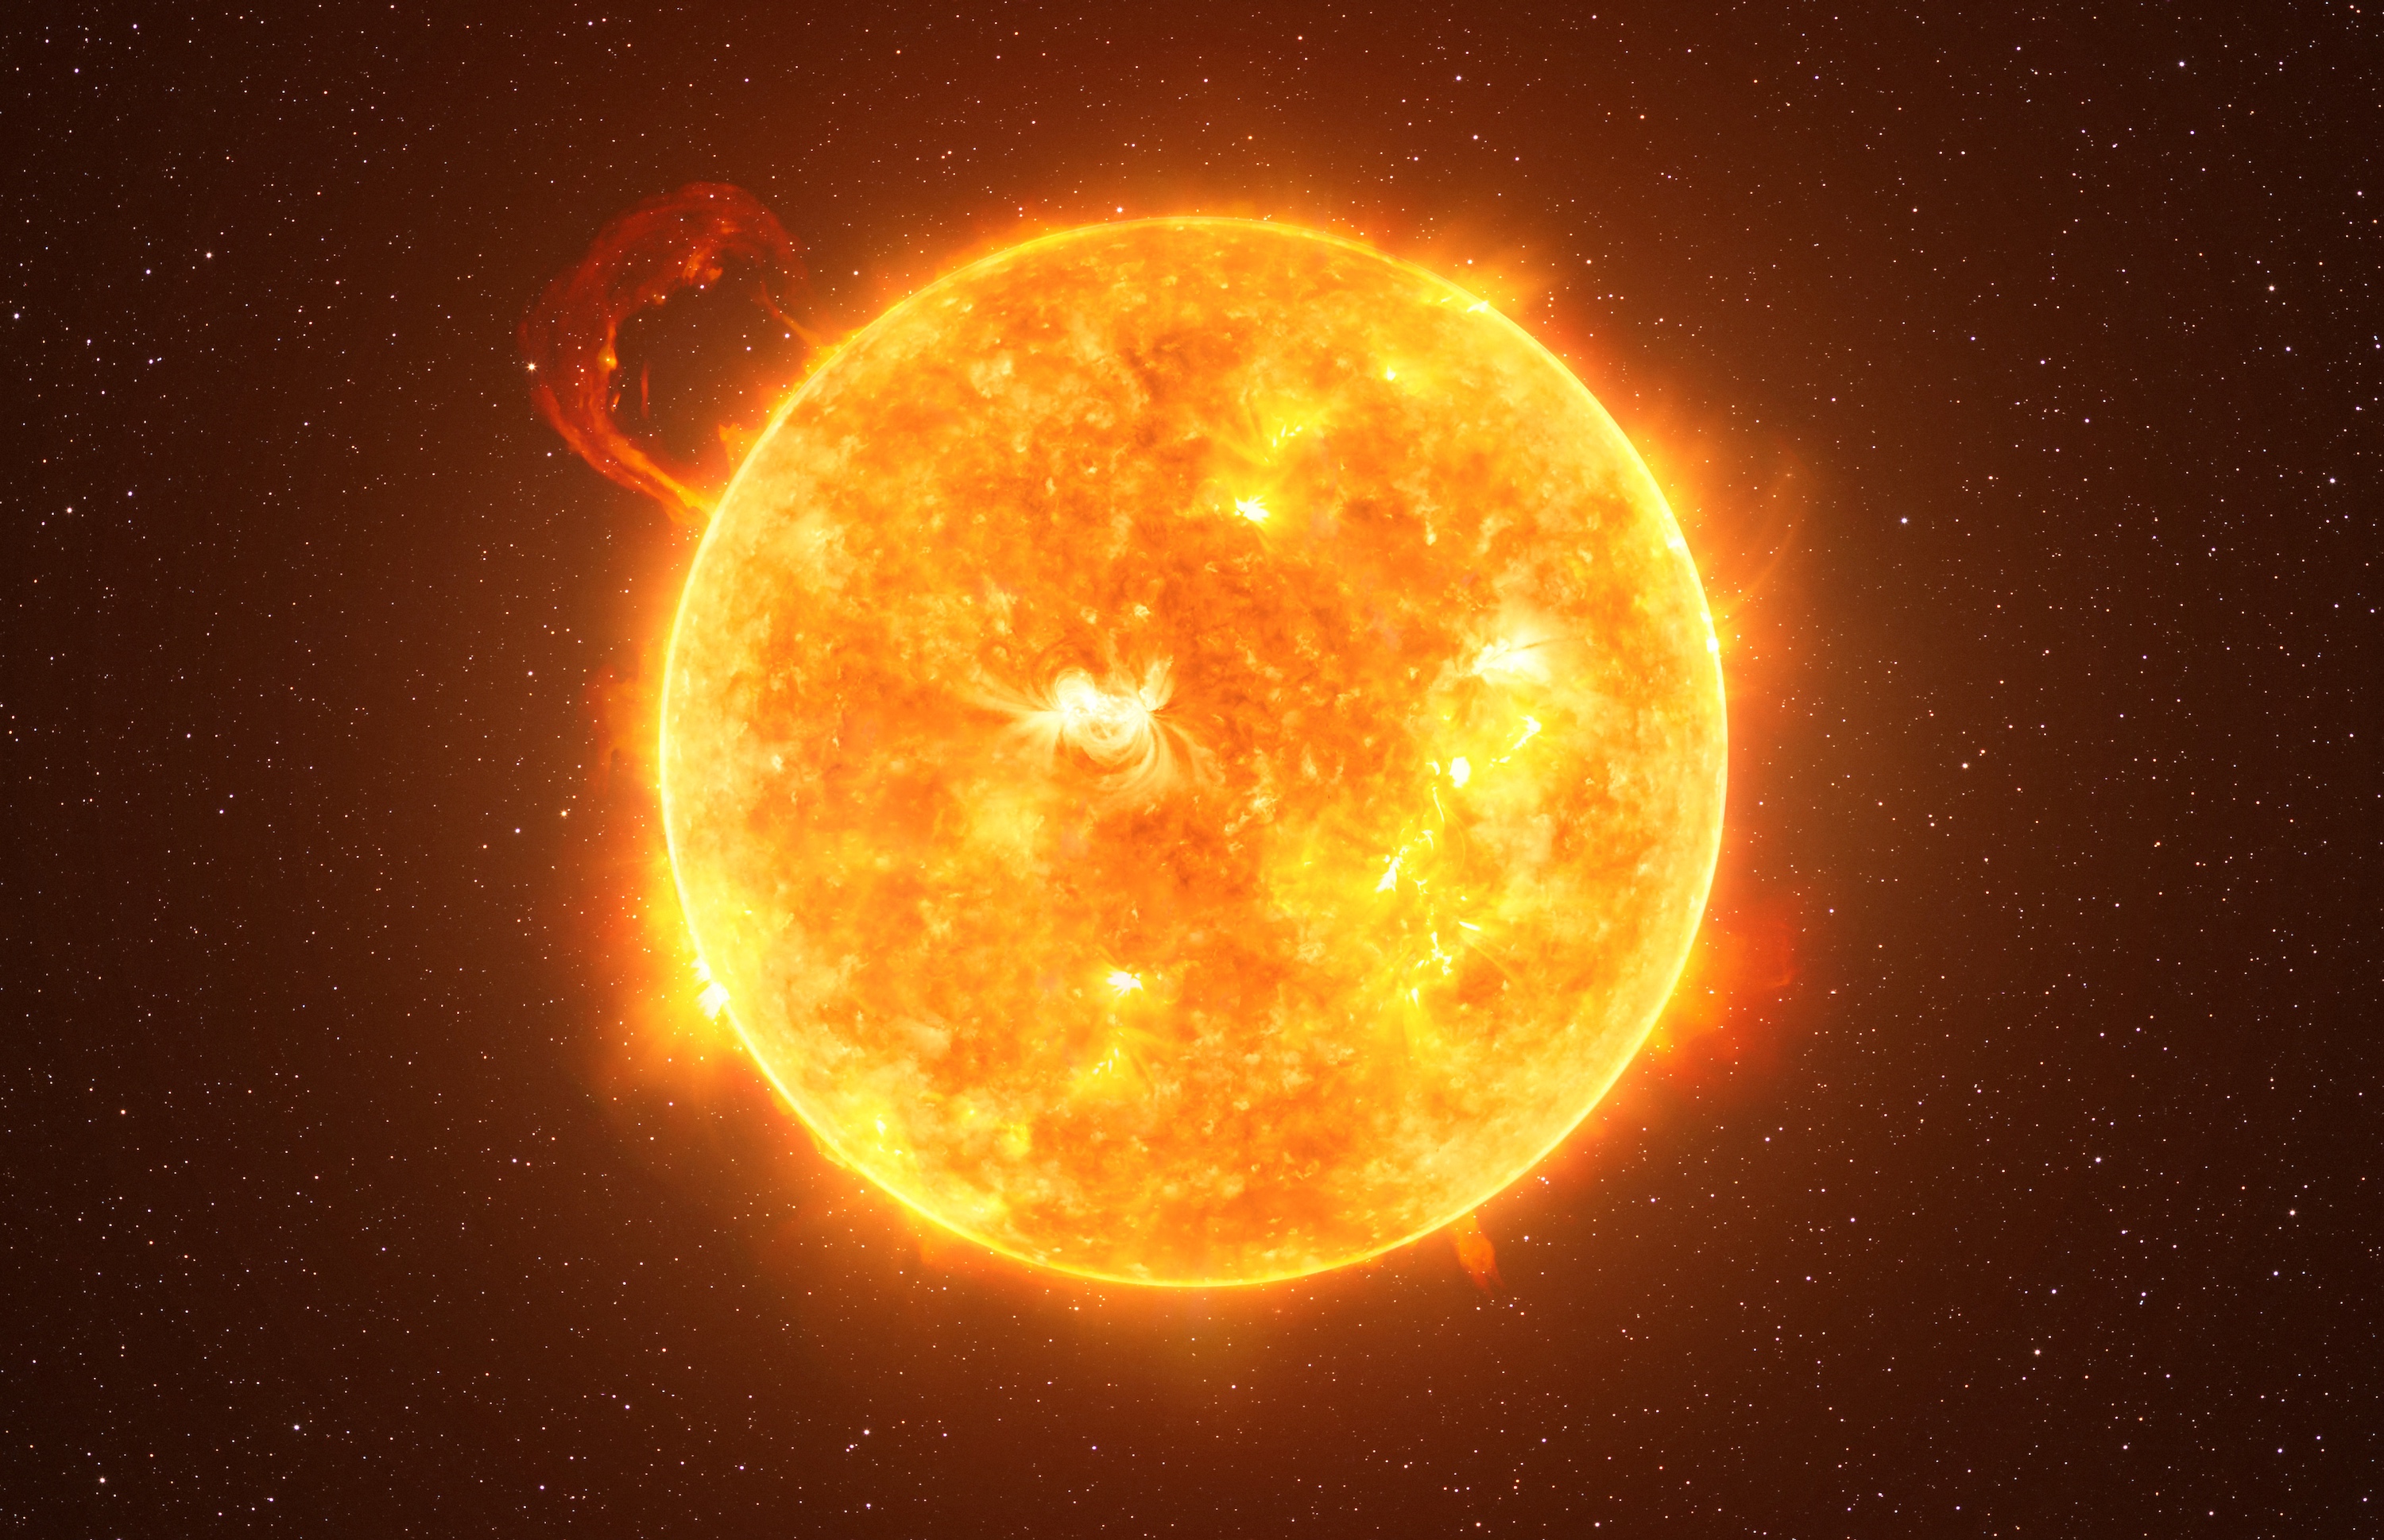 Ce samedi 3 juillet 2021, SDO (Solar Dynamics Observatory) a enregistré une éruption solaire majeure. Notre étoile n’en avait pas connu de telle depuis 2017. Ci-dessus, illustration d'une éruption solaire. © lukszczepanski, Adobe Stock